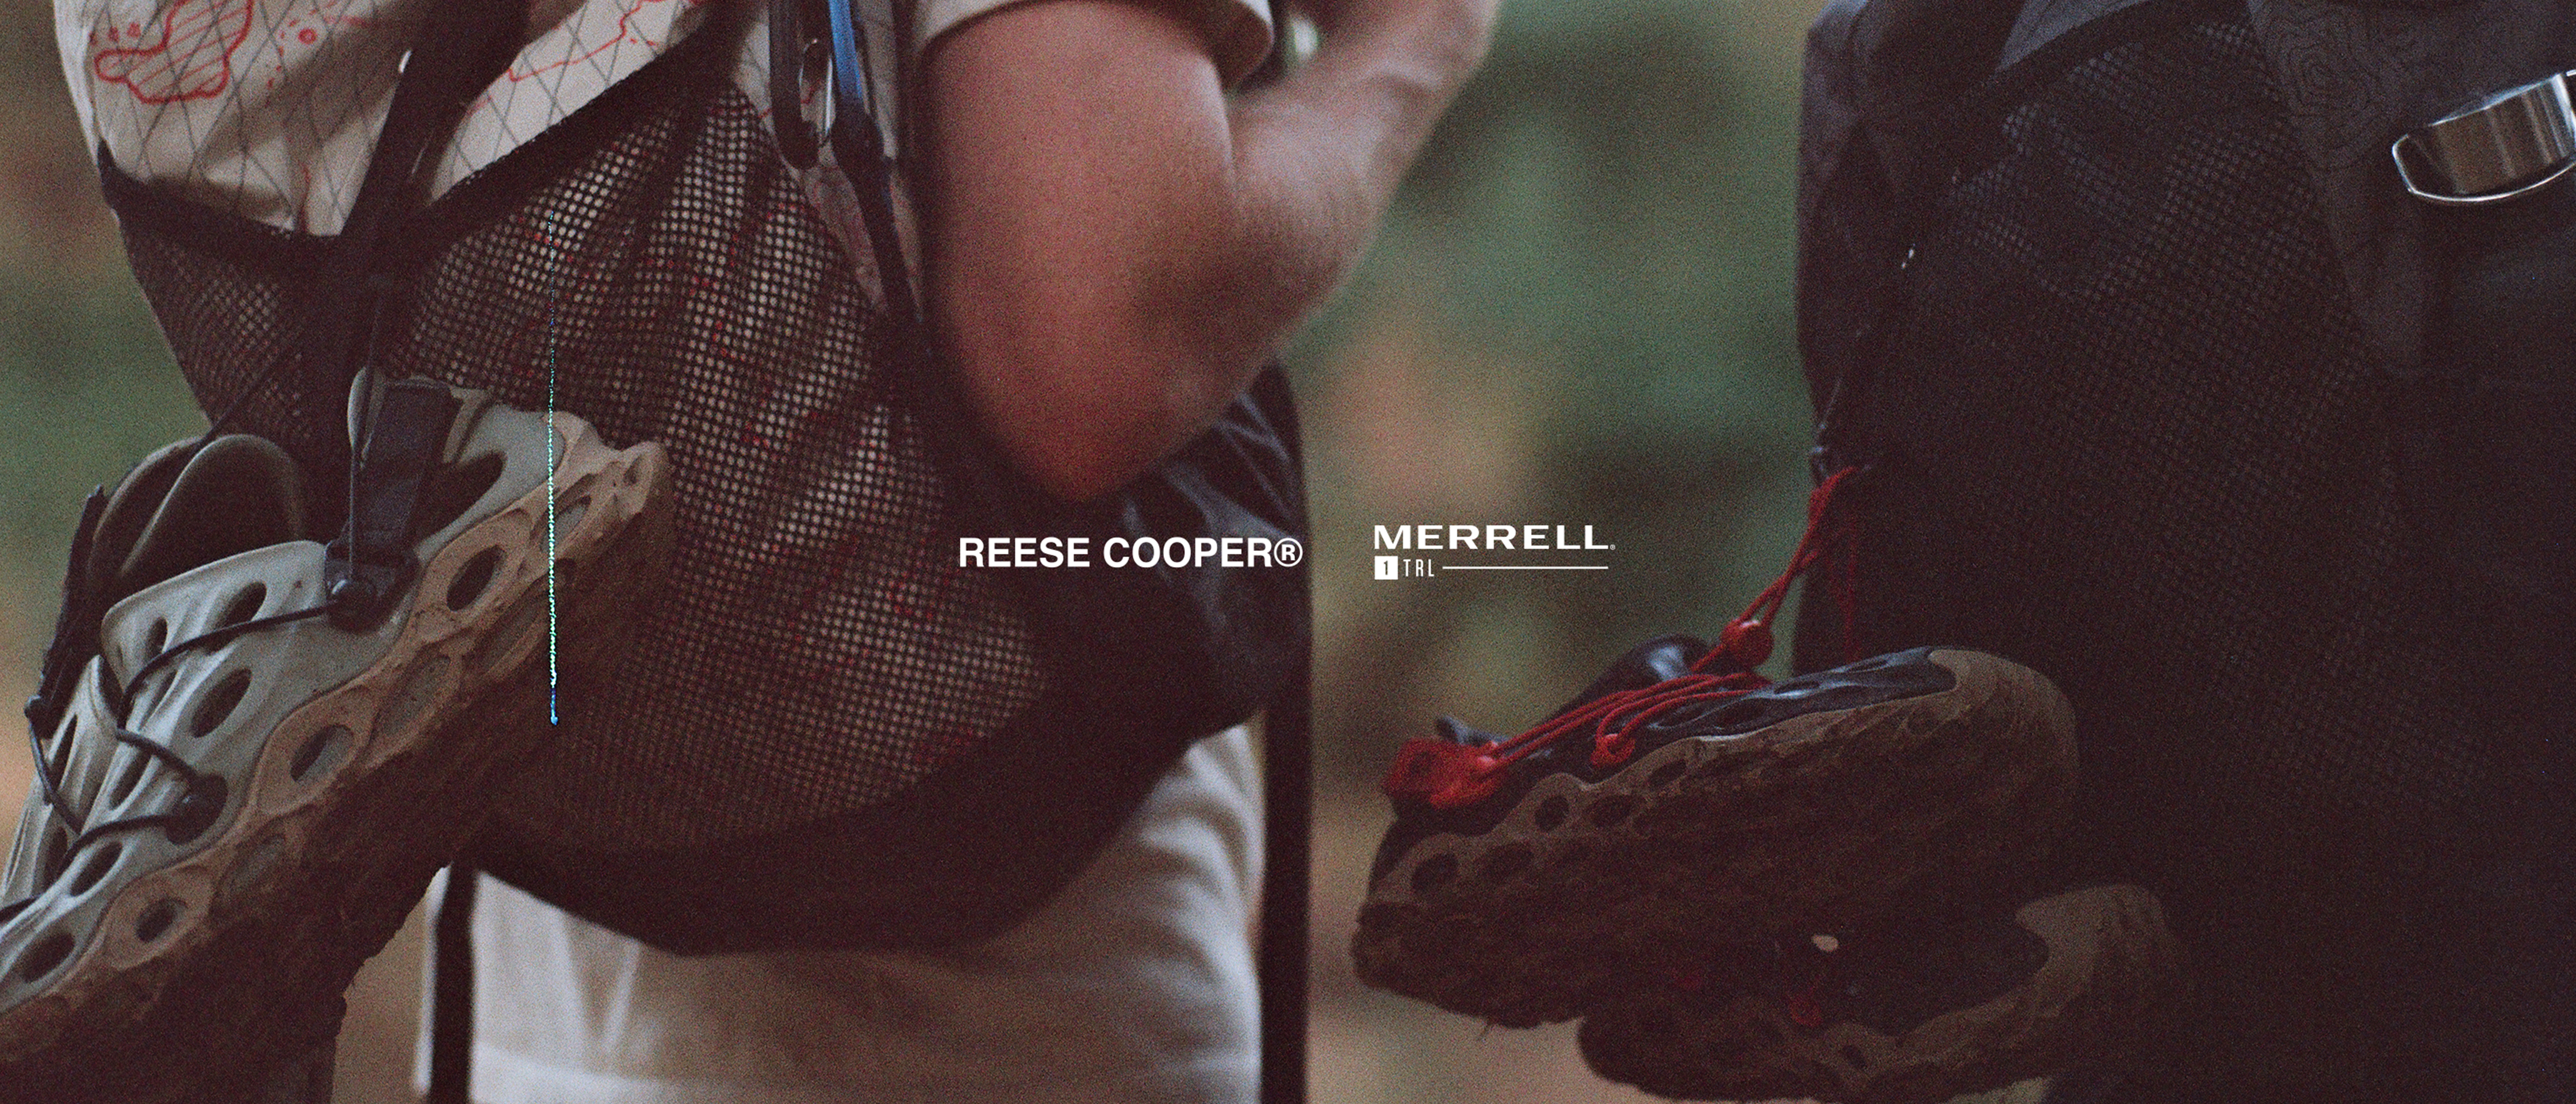 REESE COOPER® | Merrell 1 TRL